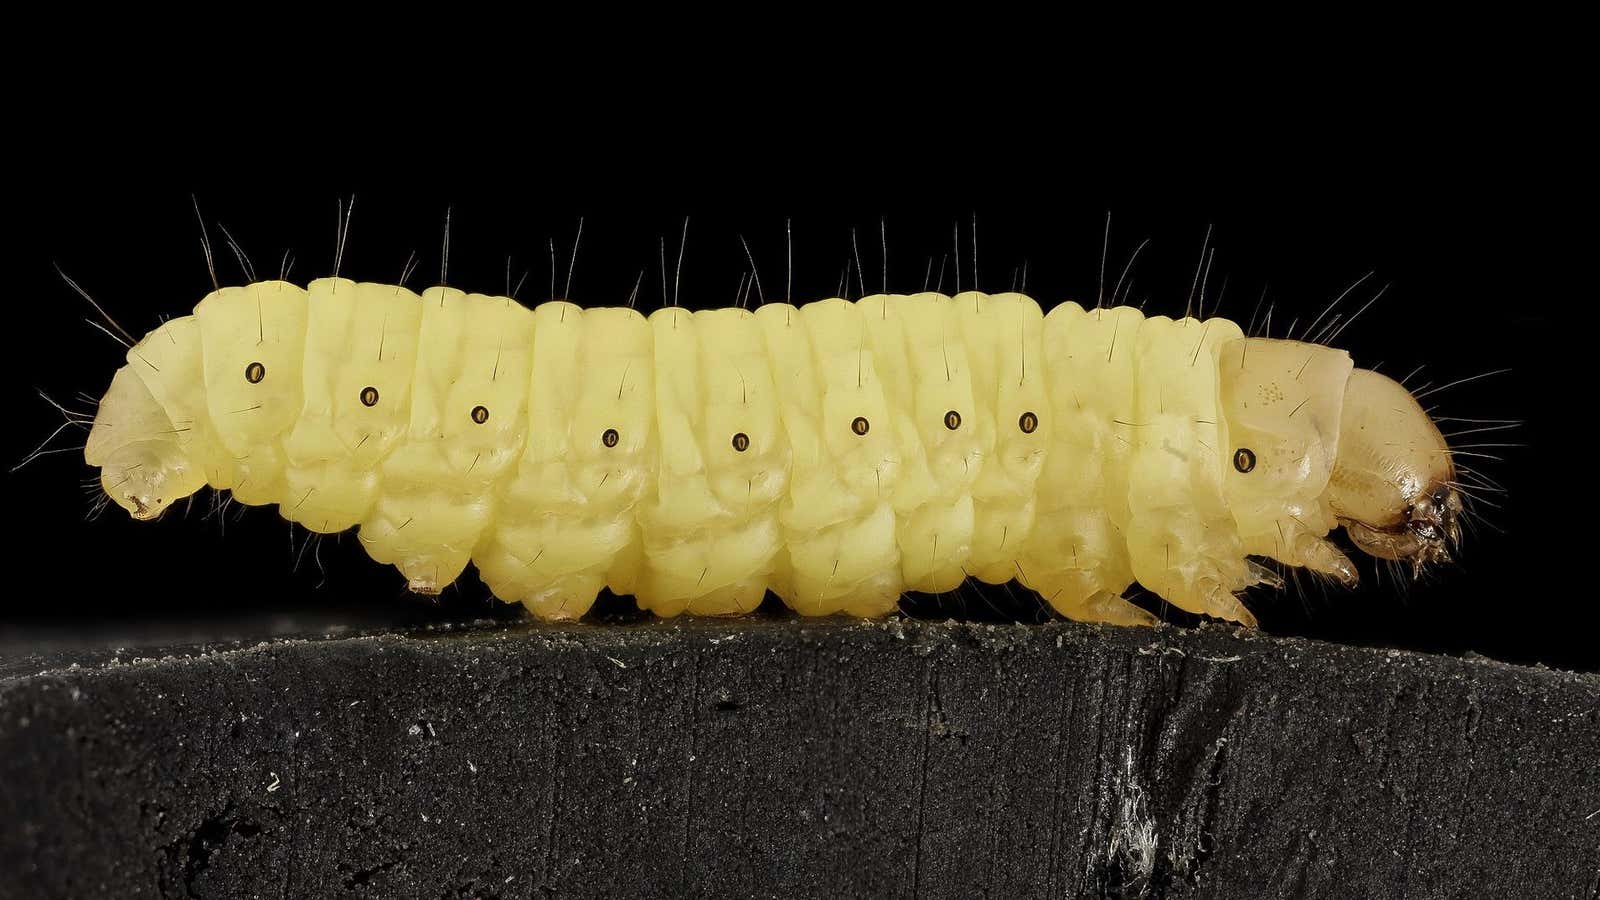 A wax worm, aka a plastic bag destroyer